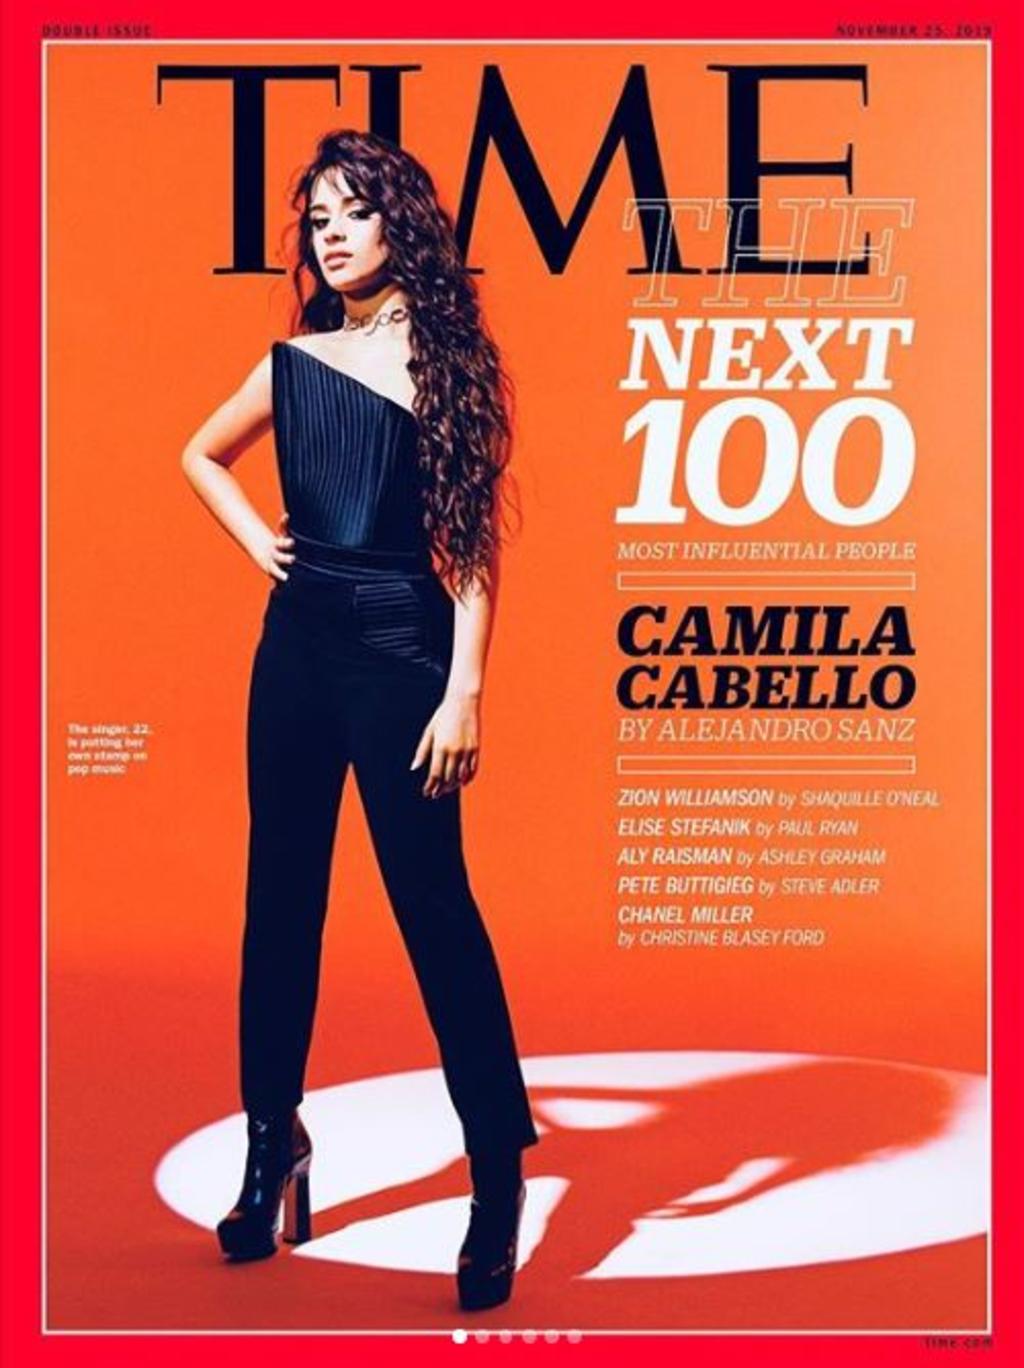 Camila Cabello encabeza la lista de las 100 personas más influyentes de 2019. (INSTAGRAM)